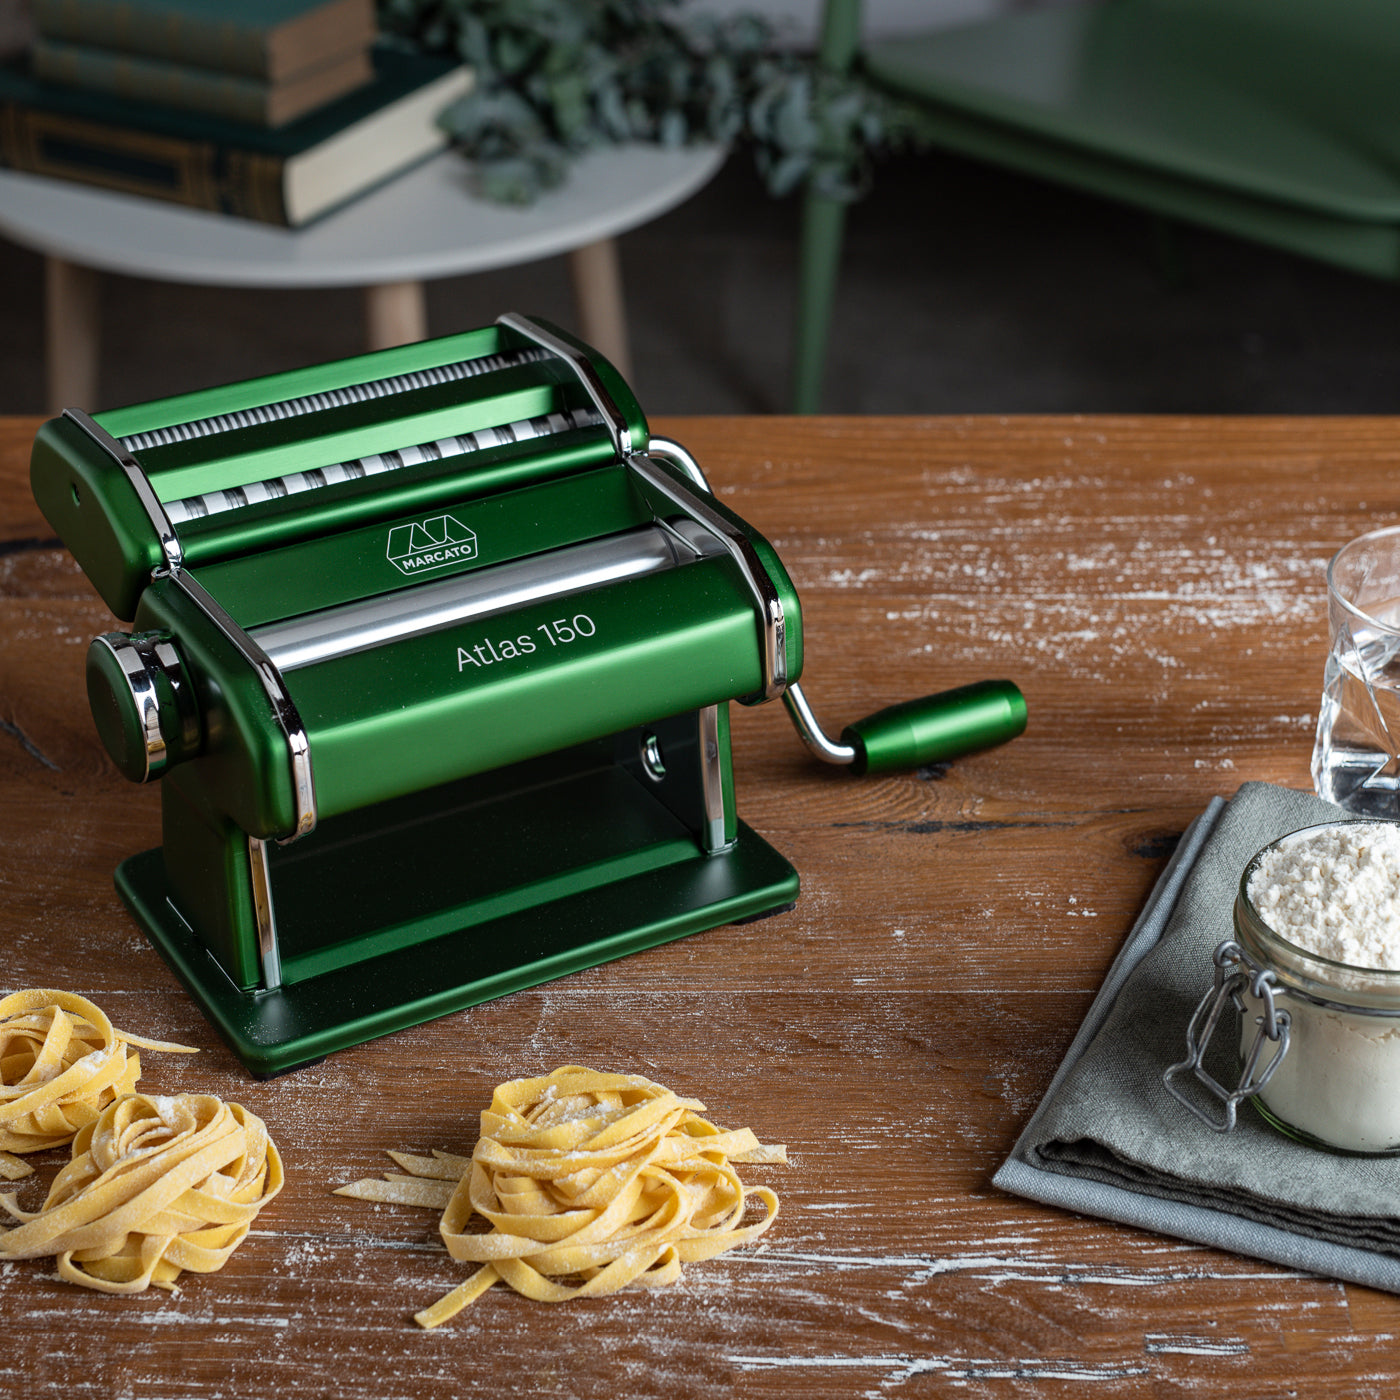 Marcato Atlas 150 pasta maker, green